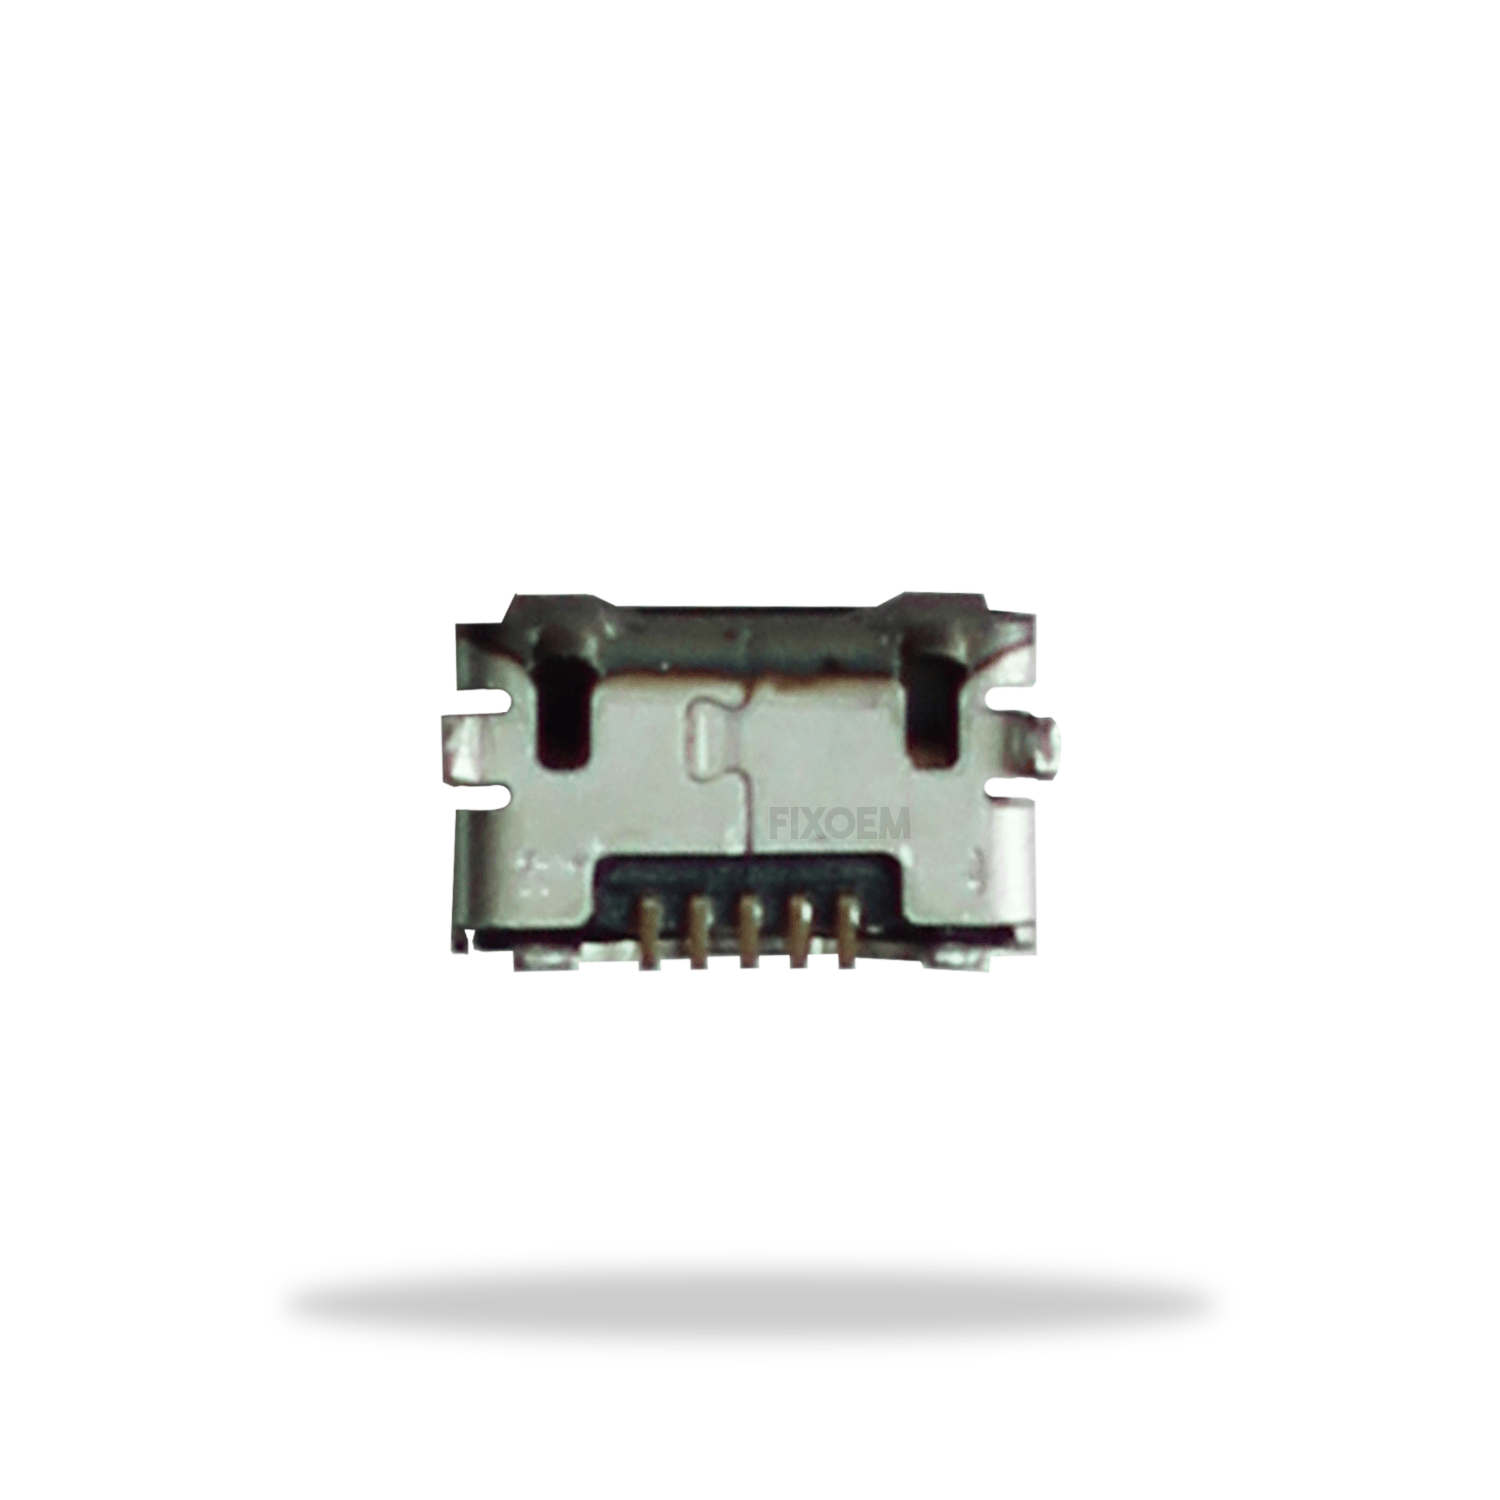 Pin Carga Sony Vivaz U5 Moto G3 G Play P8 Lite Y5Ii 5Pz a solo $ 30.00 Refaccion y puestos celulares, refurbish y microelectronica.- FixOEM